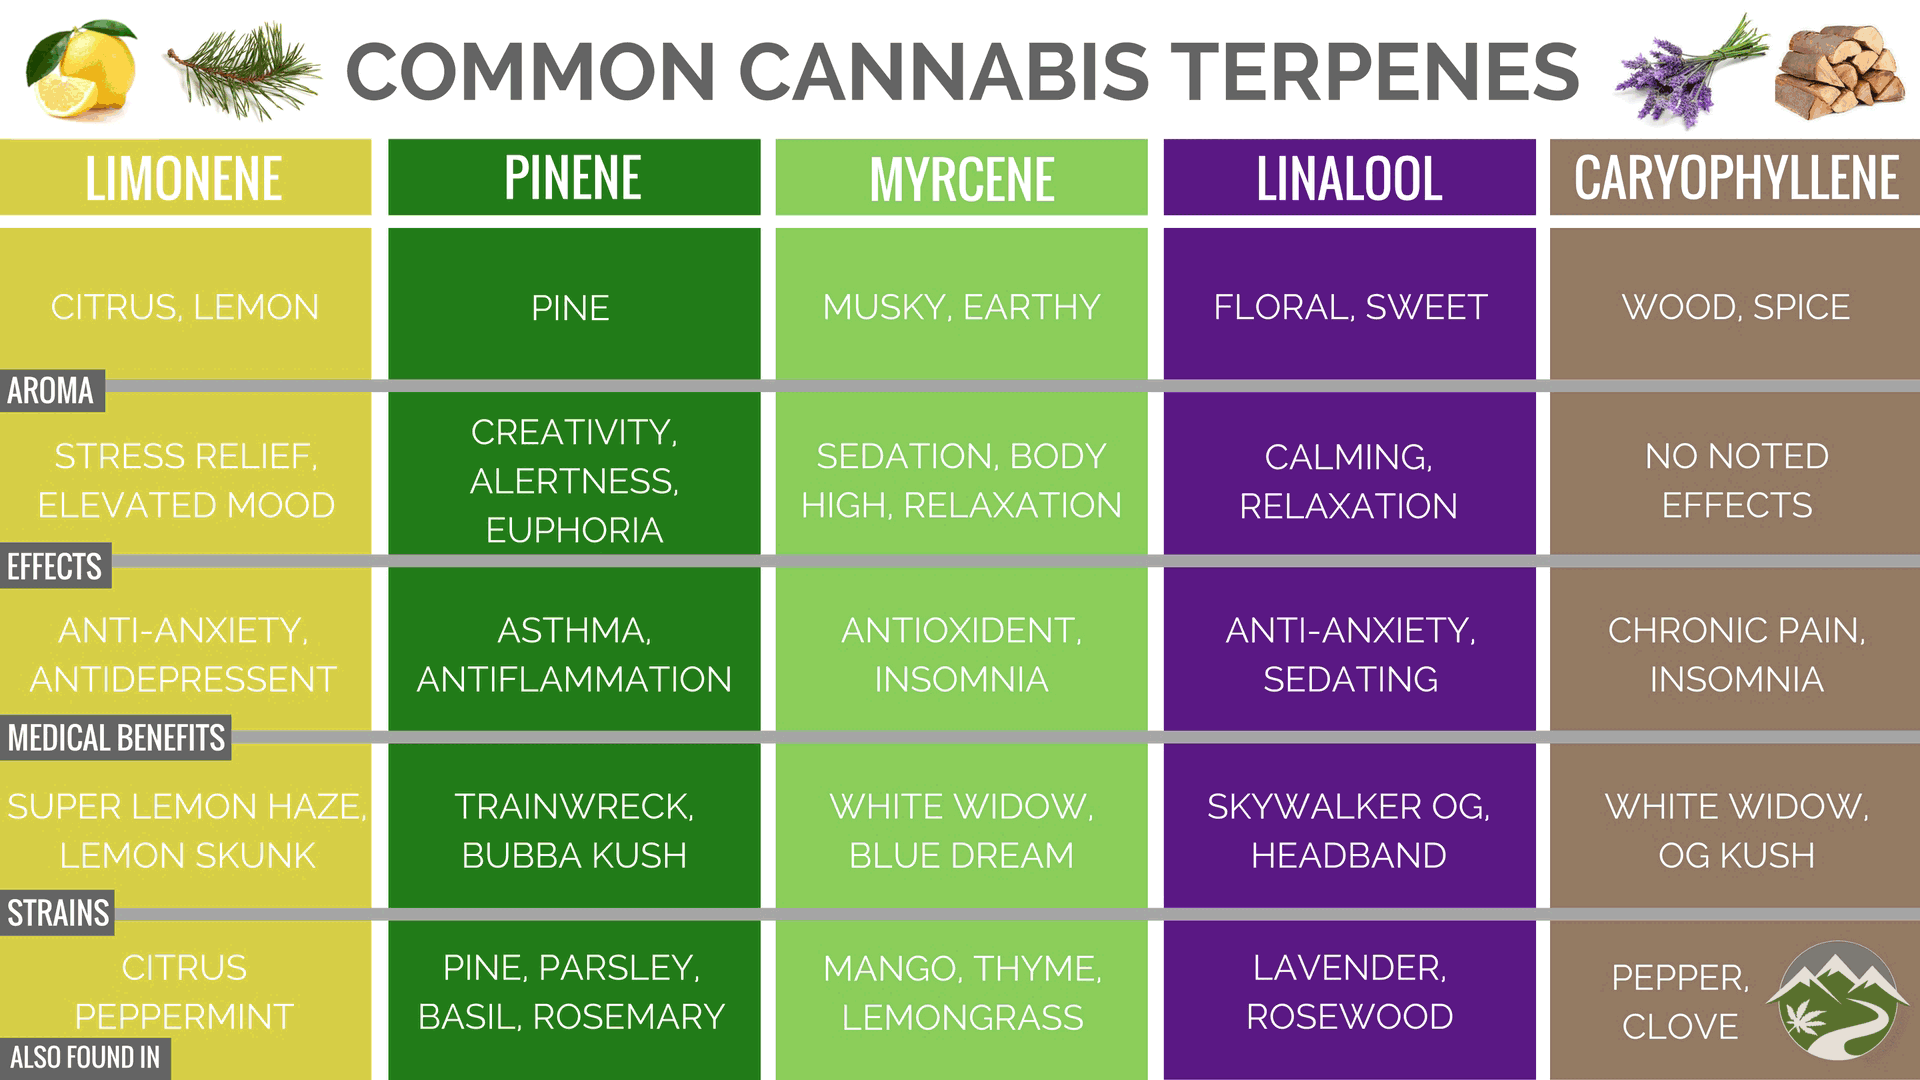 Cannabis Concentrates Guide | PotGuide.com